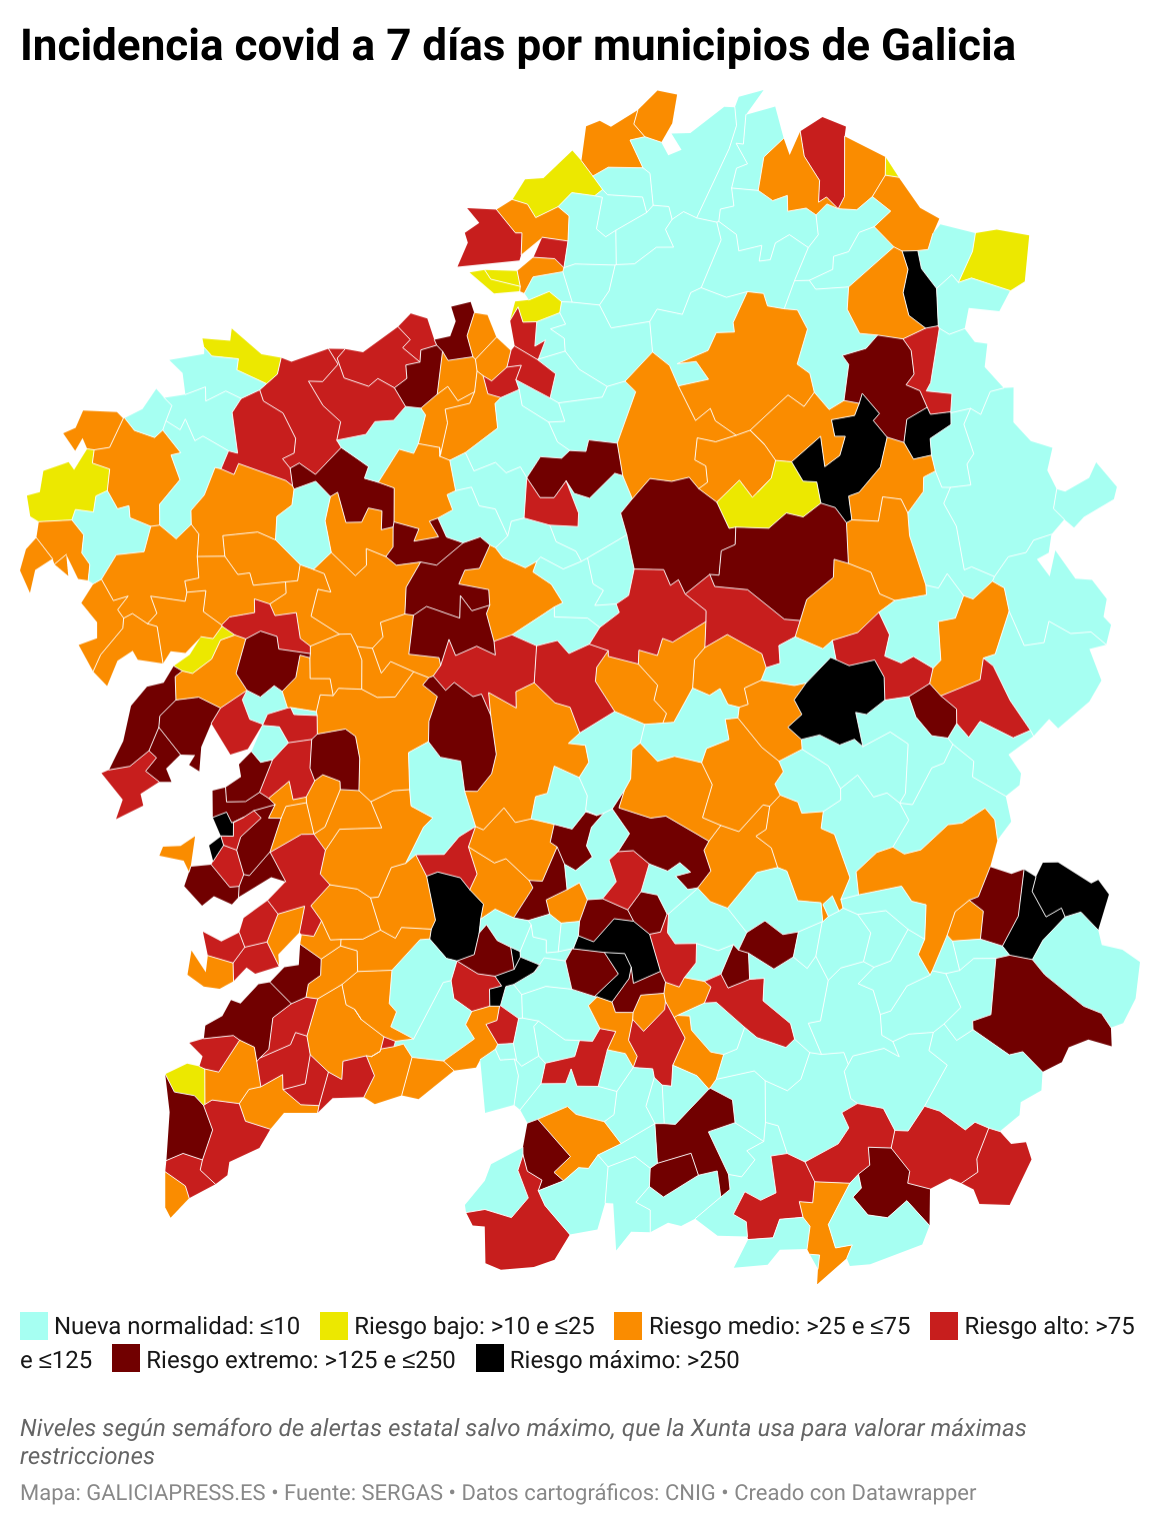 VYGXB incidencia covid a 7 d as por municipios de galicia  (1)